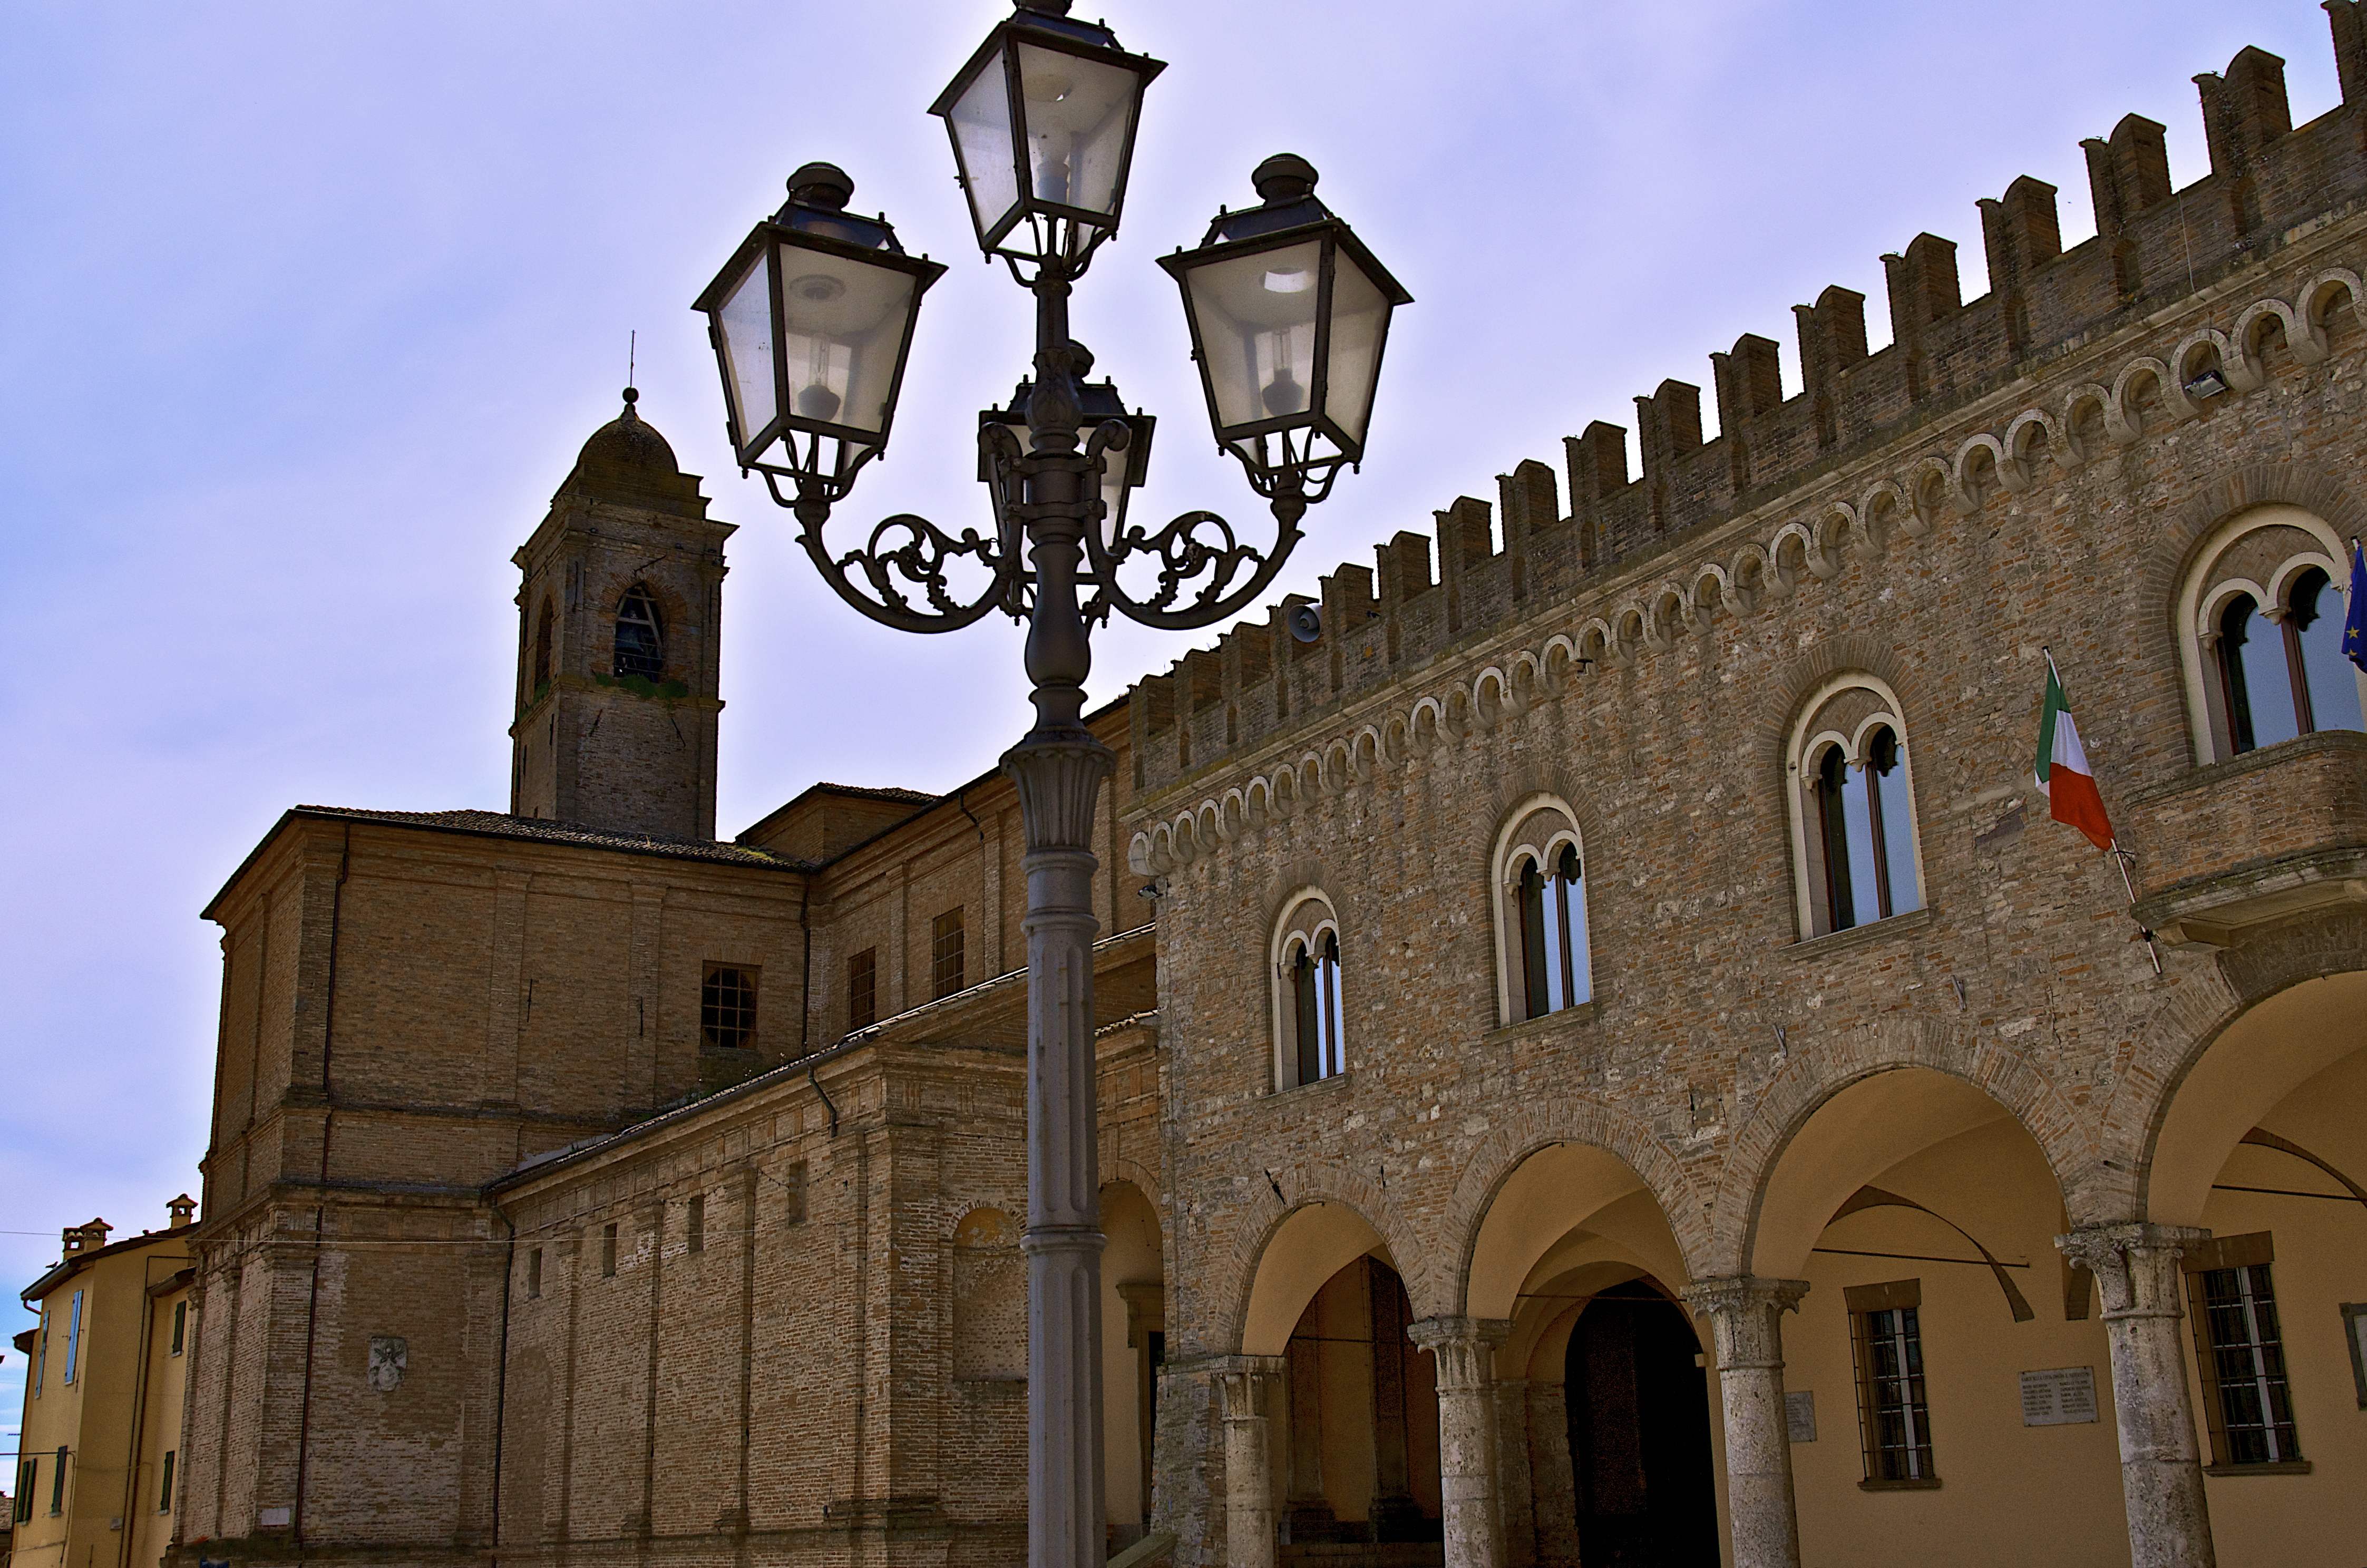 photo: https://upload.wikimedia.org/wikipedia/commons/9/90/Prospettiva_sul_palazzo_Comunale.jpeg